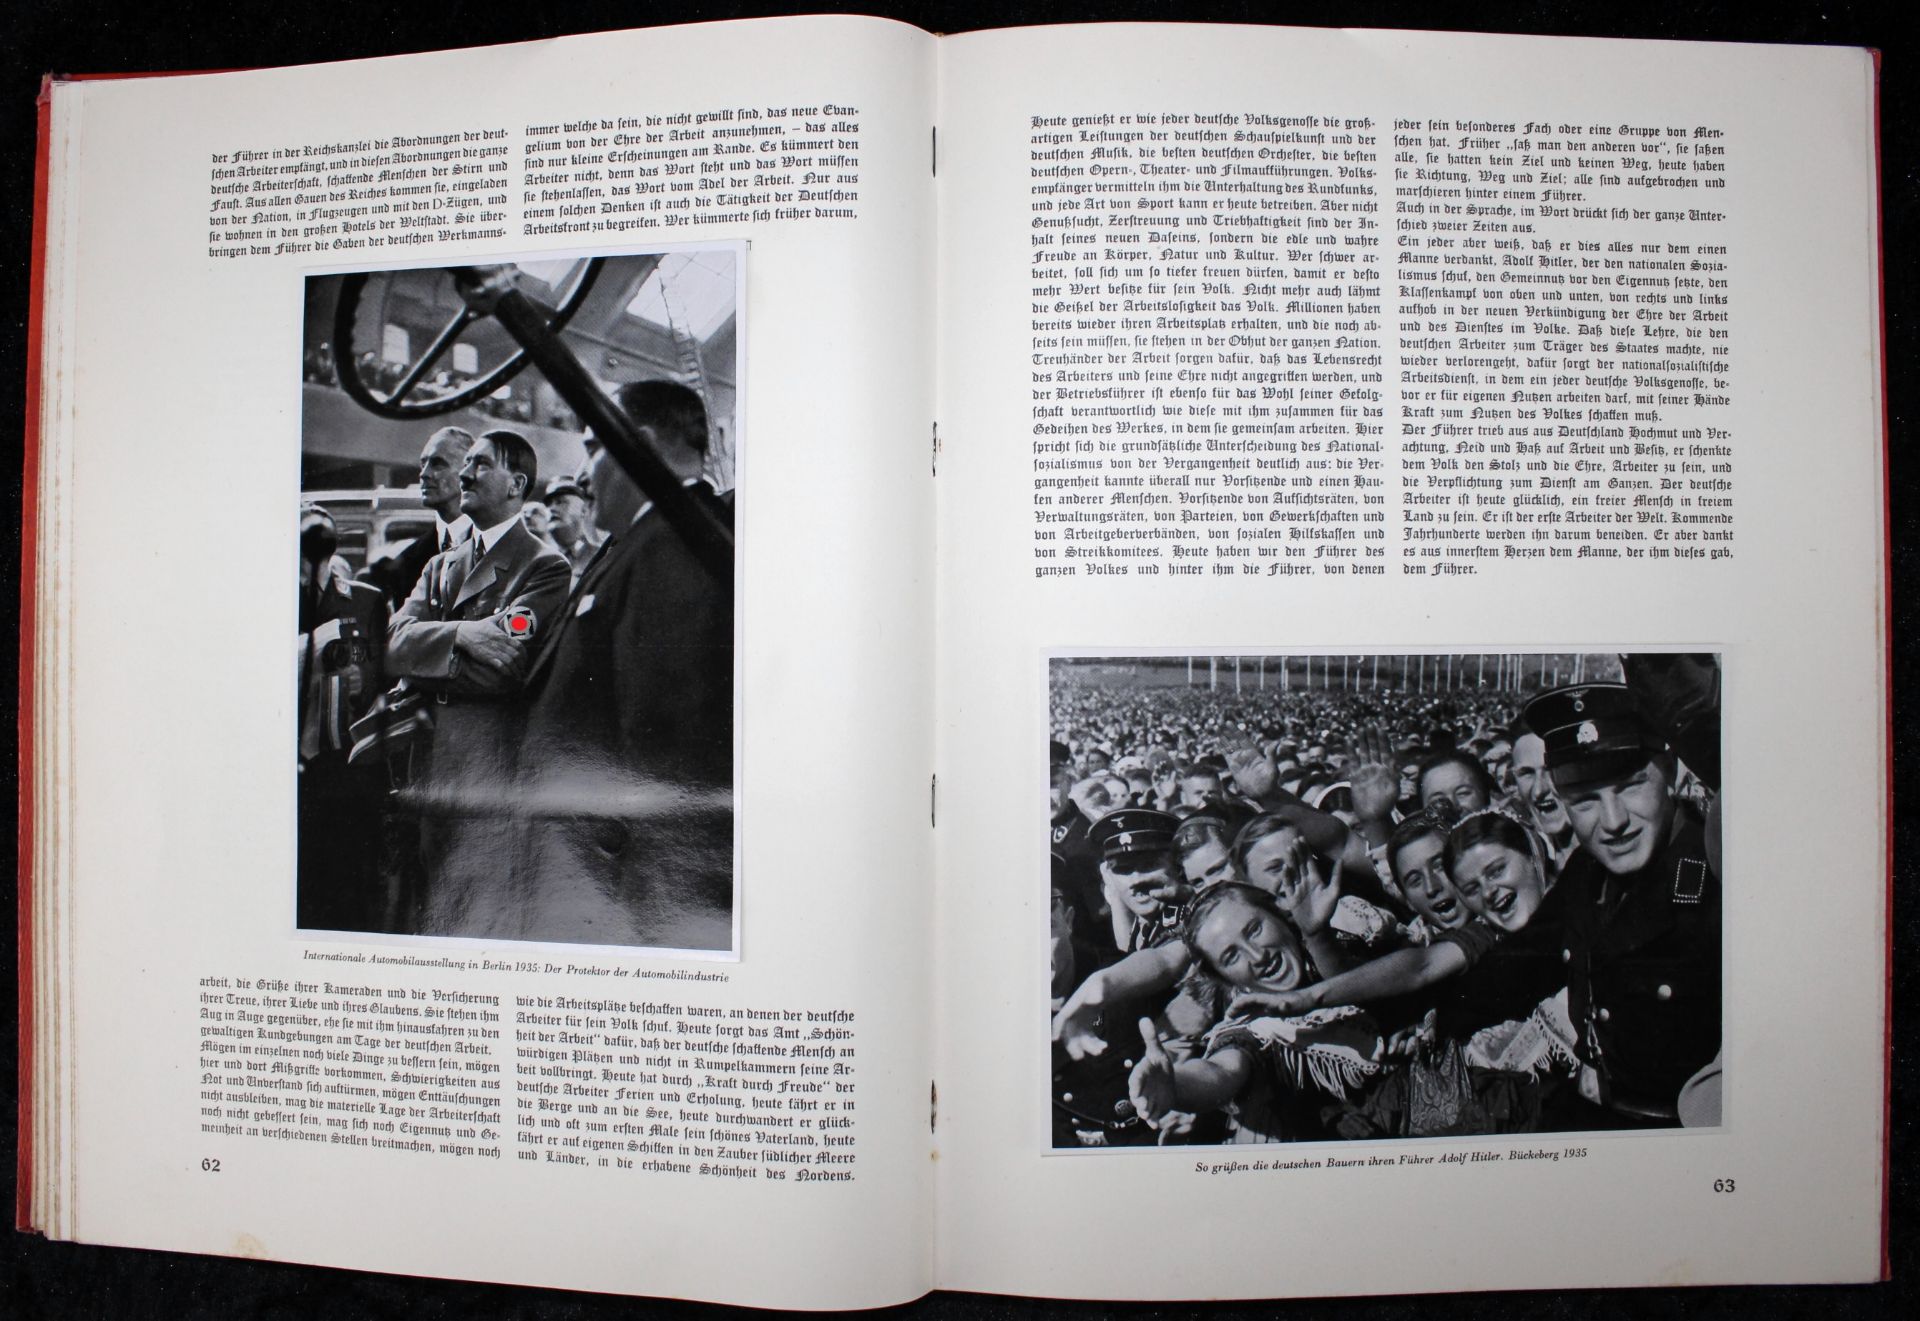 3.Reich, Zigarettenbilder "Bilder aus dem Leben des Führers", Album 1936 - Image 4 of 4